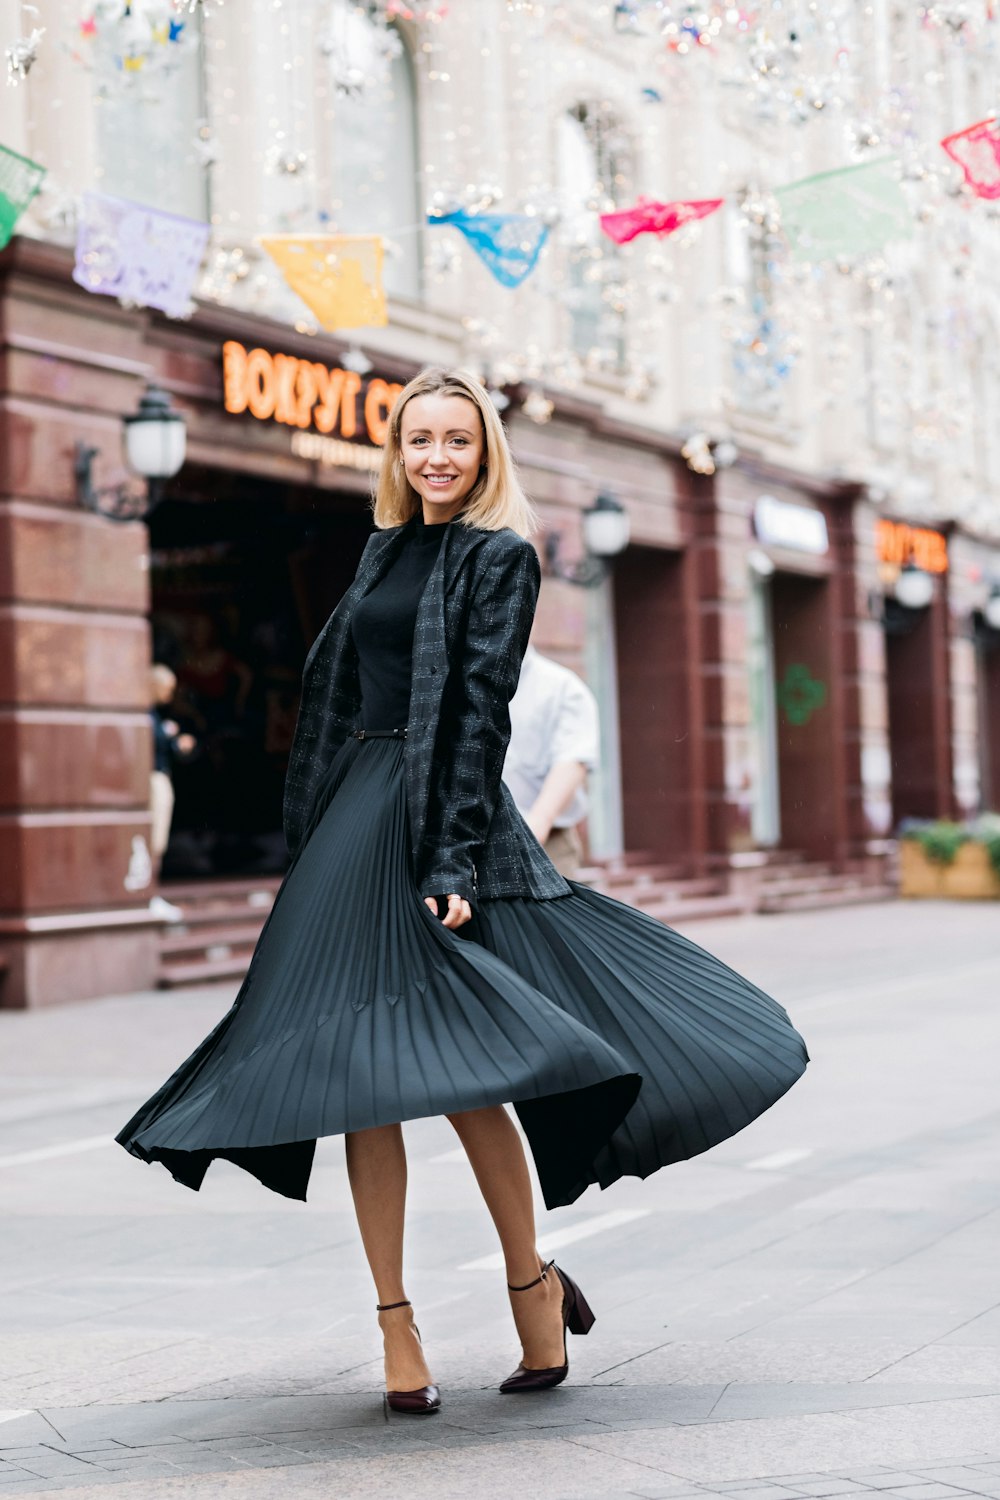 콘크리트 포장 도로에 서있는 검은 드레스를 입고 웃는 여자의 선택적 초점 사진